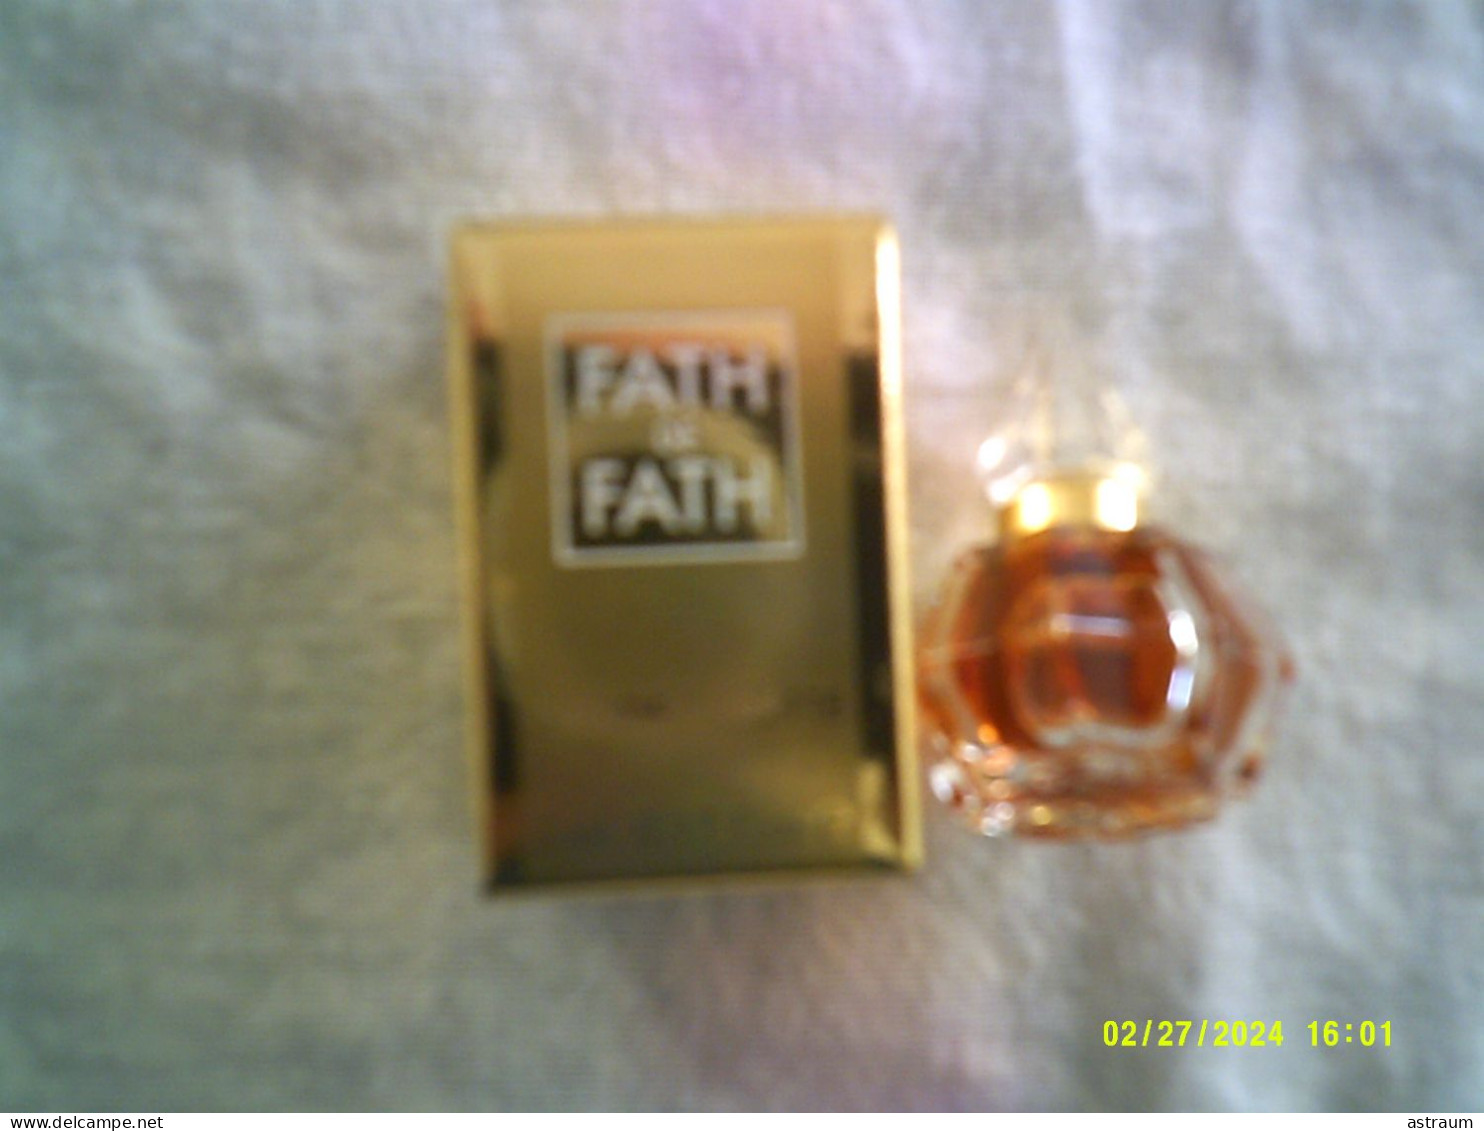 Miniature Ancienne Parfum - Fath De Fath - EDT - Pleine Avec Boite 5ml - Mignon Di Profumo Donna (con Box)